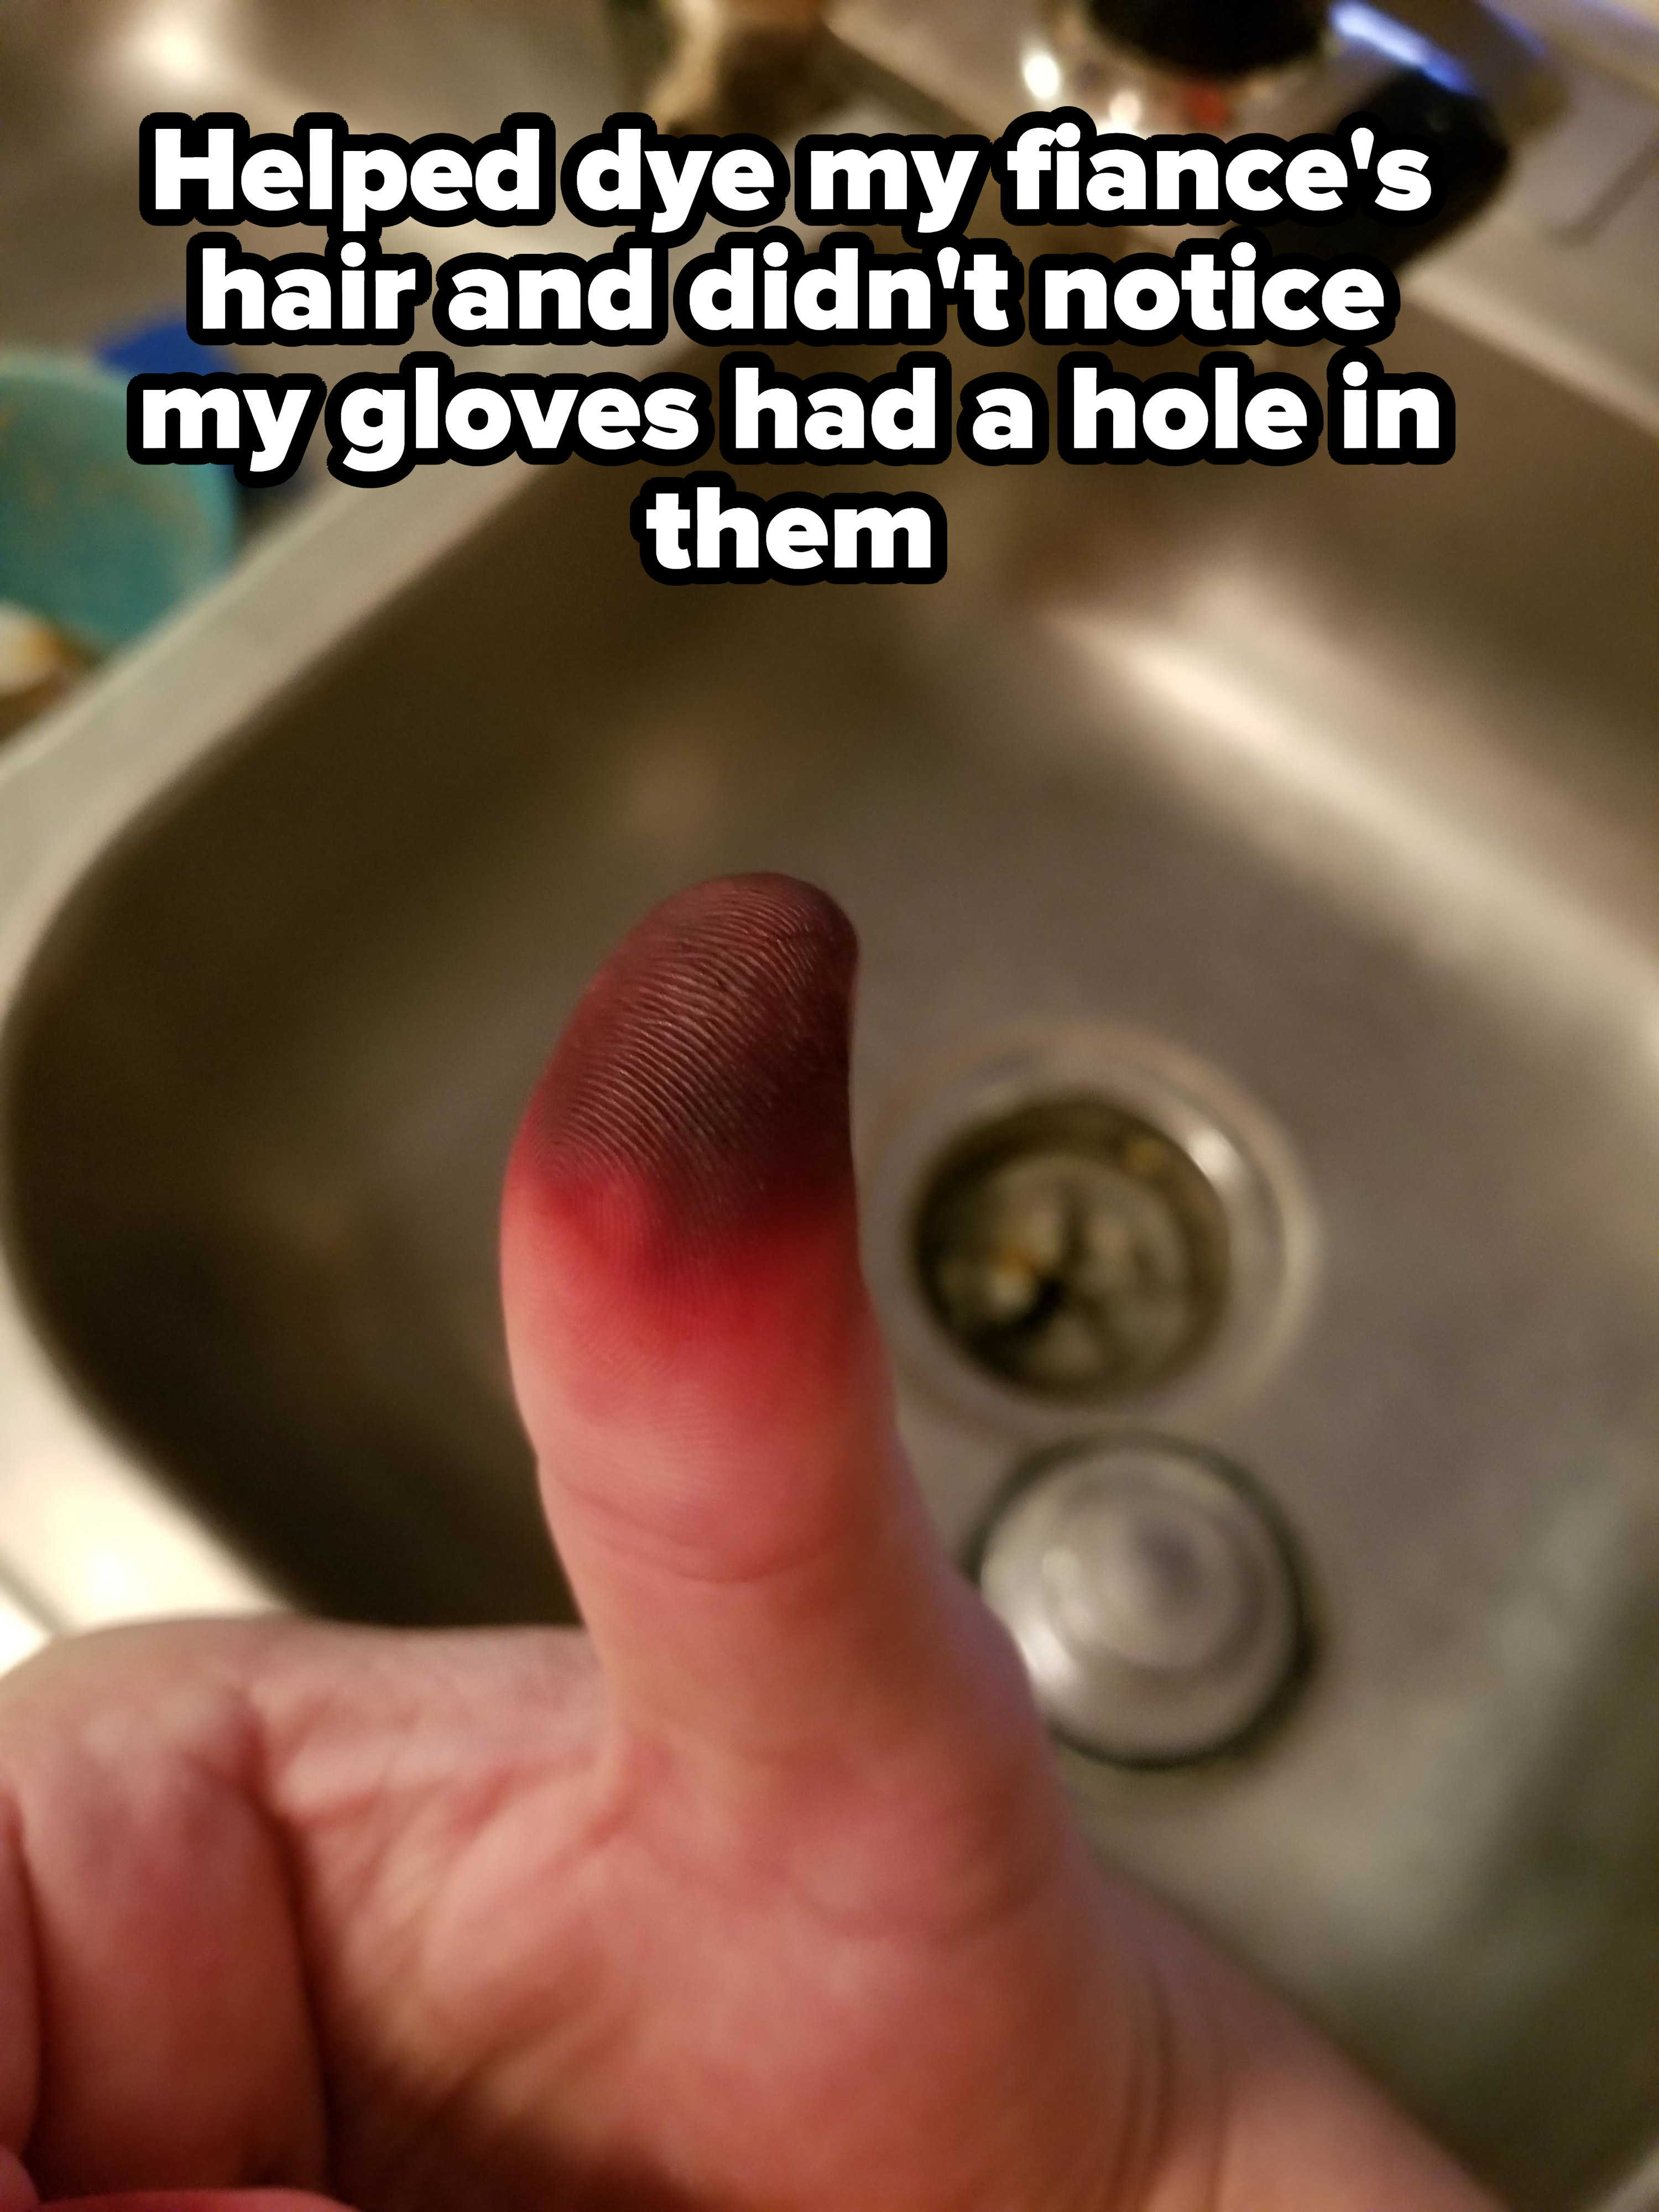 A burnt thumb